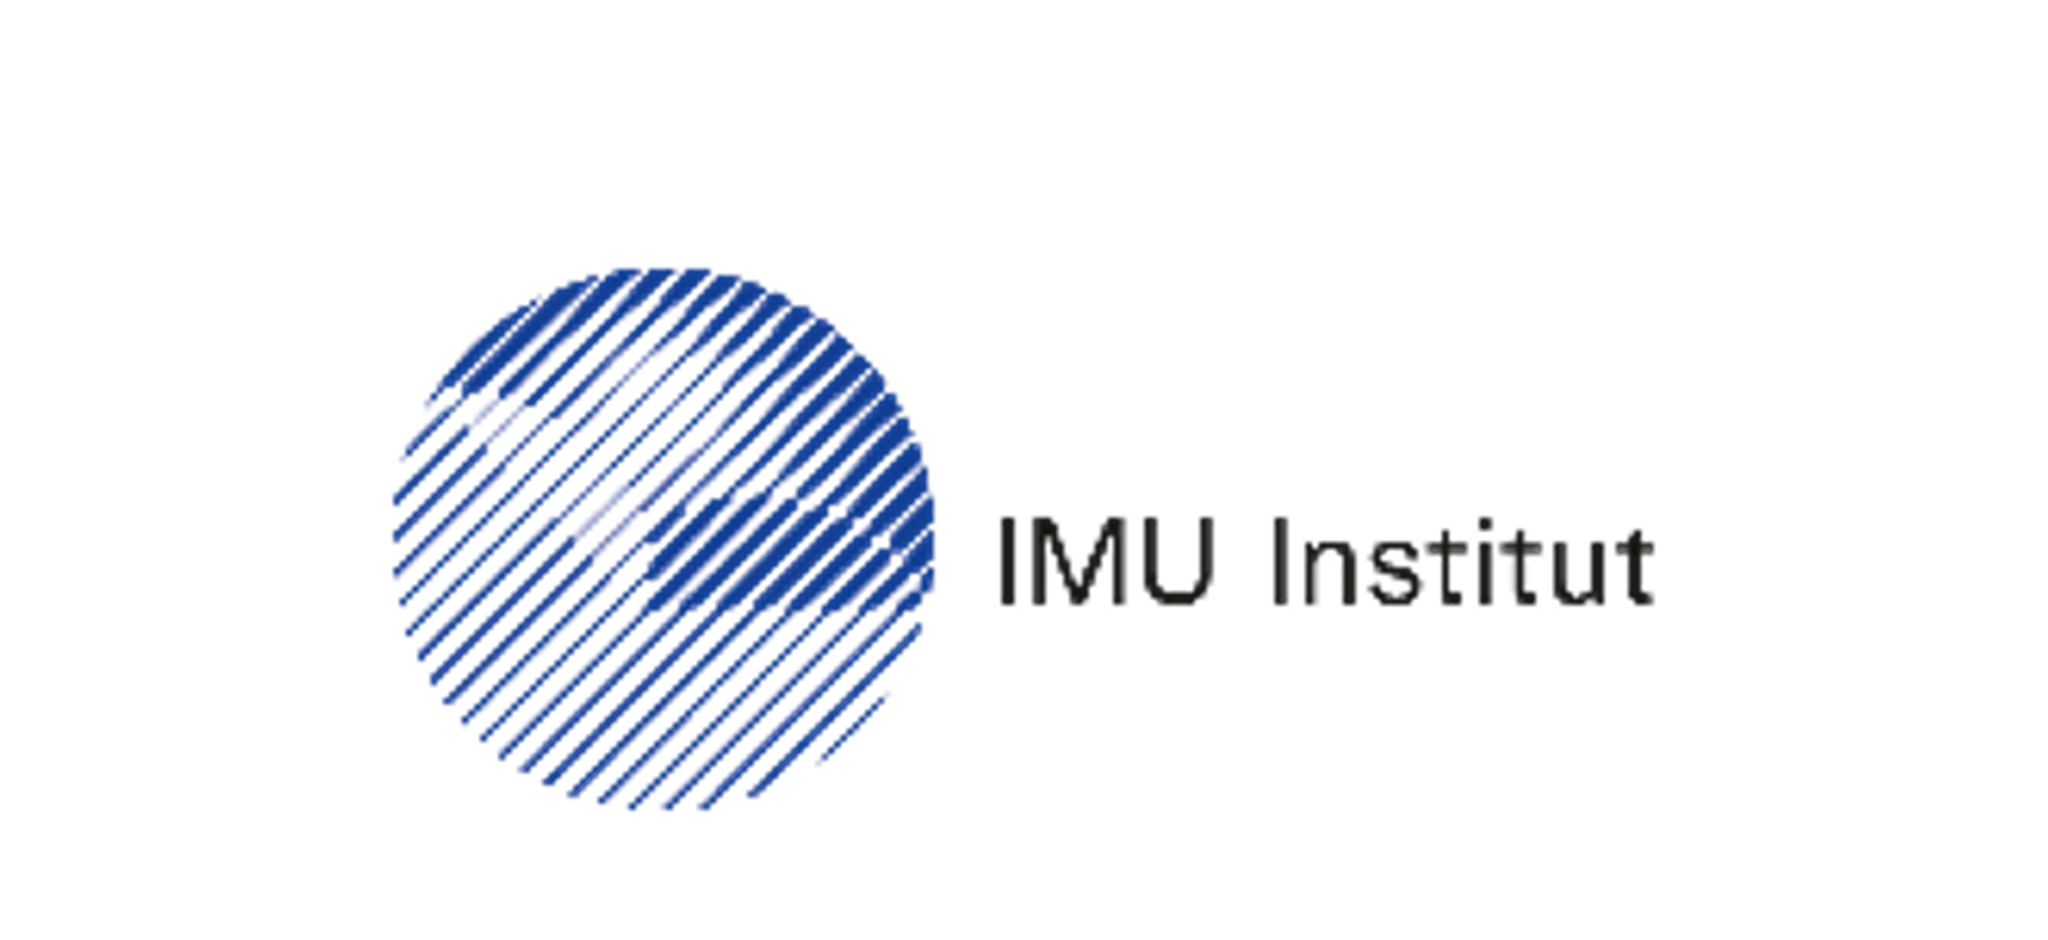 Das IMU Institut stellt sich vor